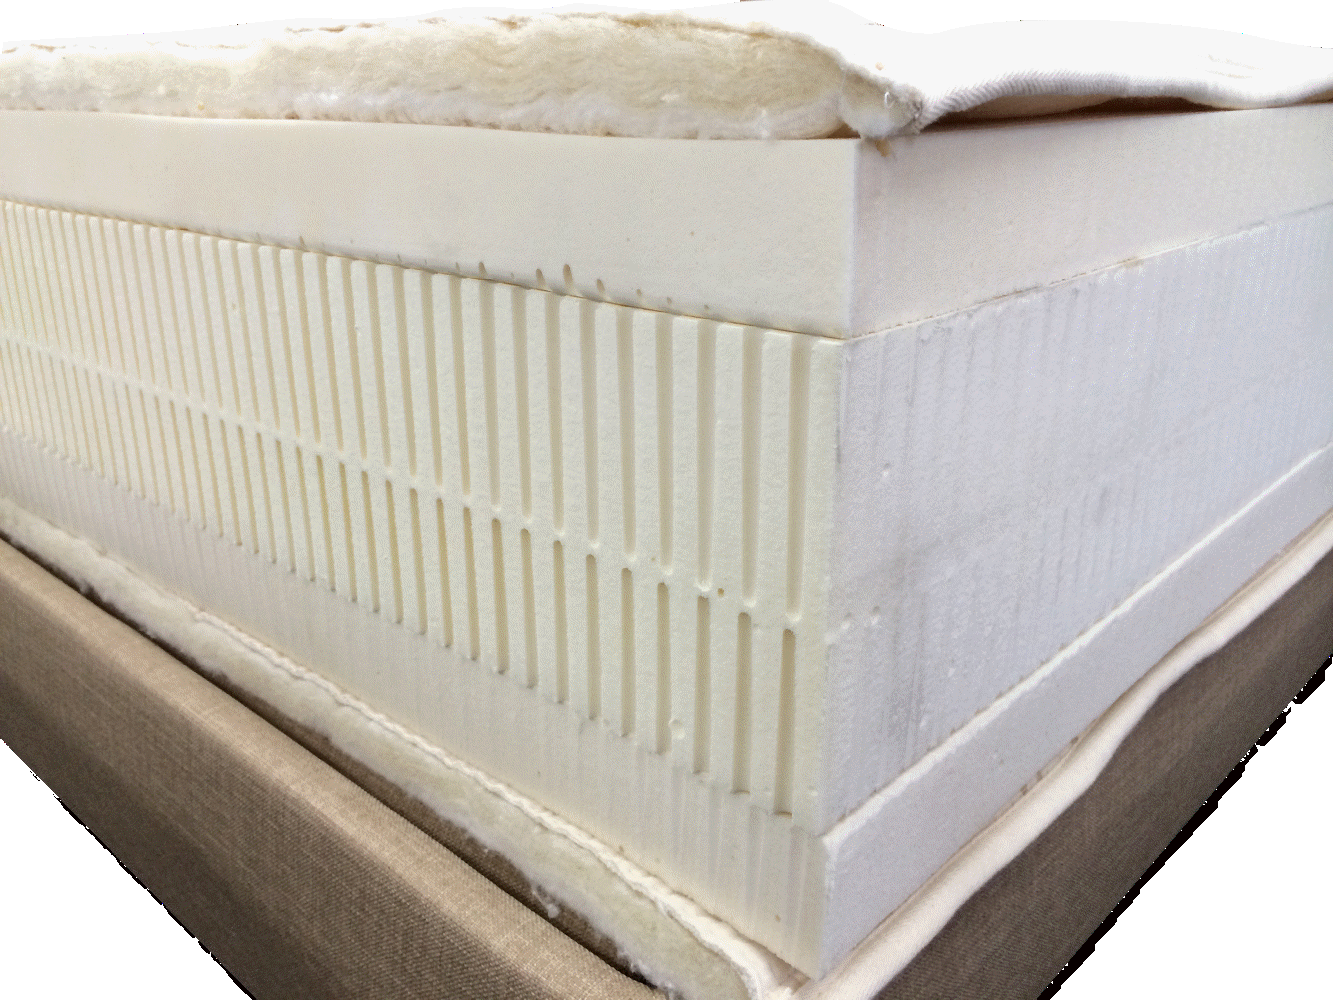 Southgate Certified Organic Latex GOLS Natural GOTS cotton wool mattress